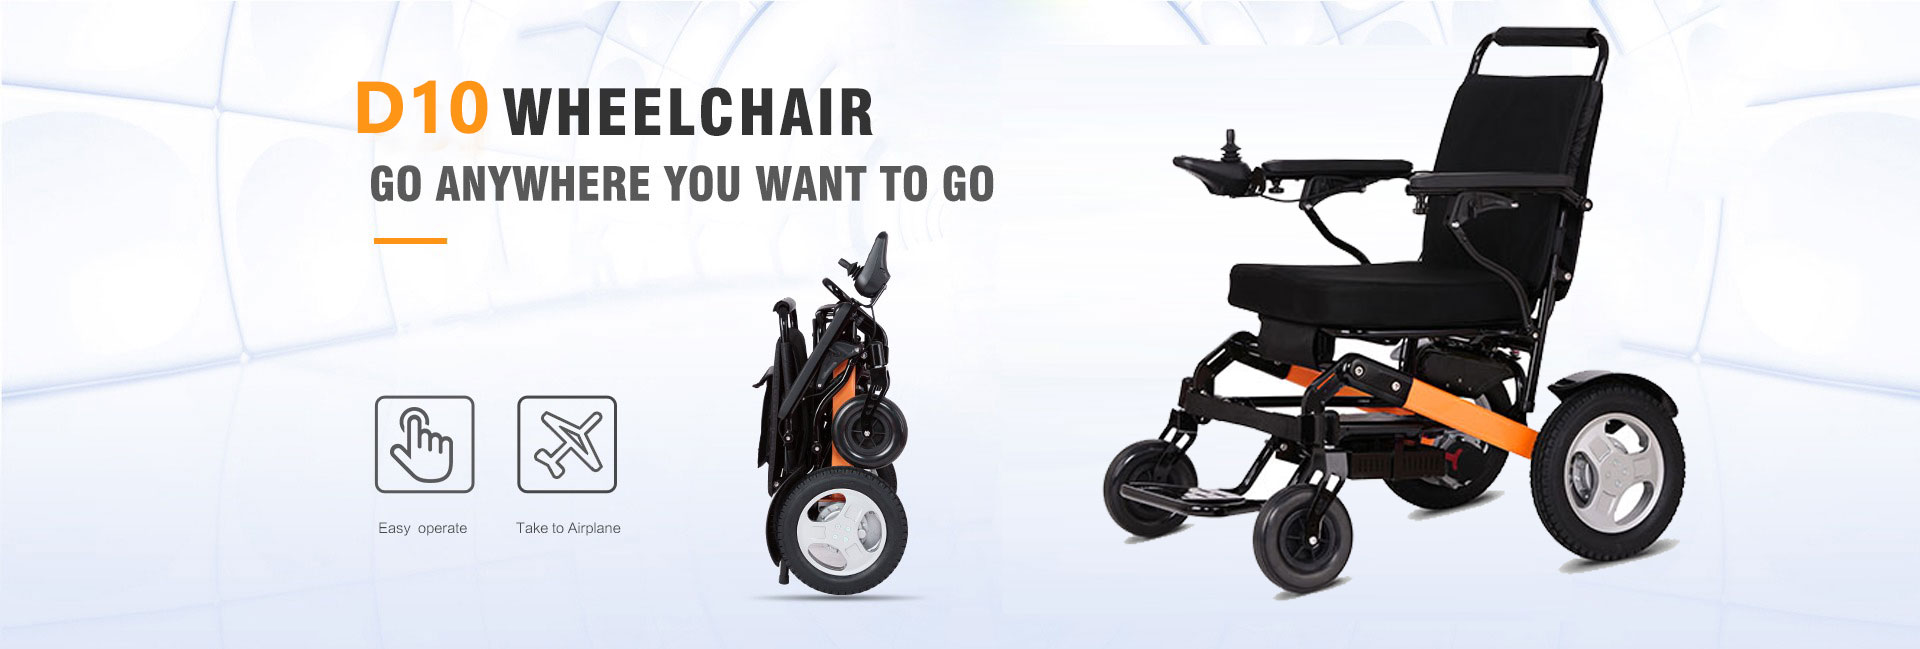 D10 Lightweight Folding Electric Wheelchair